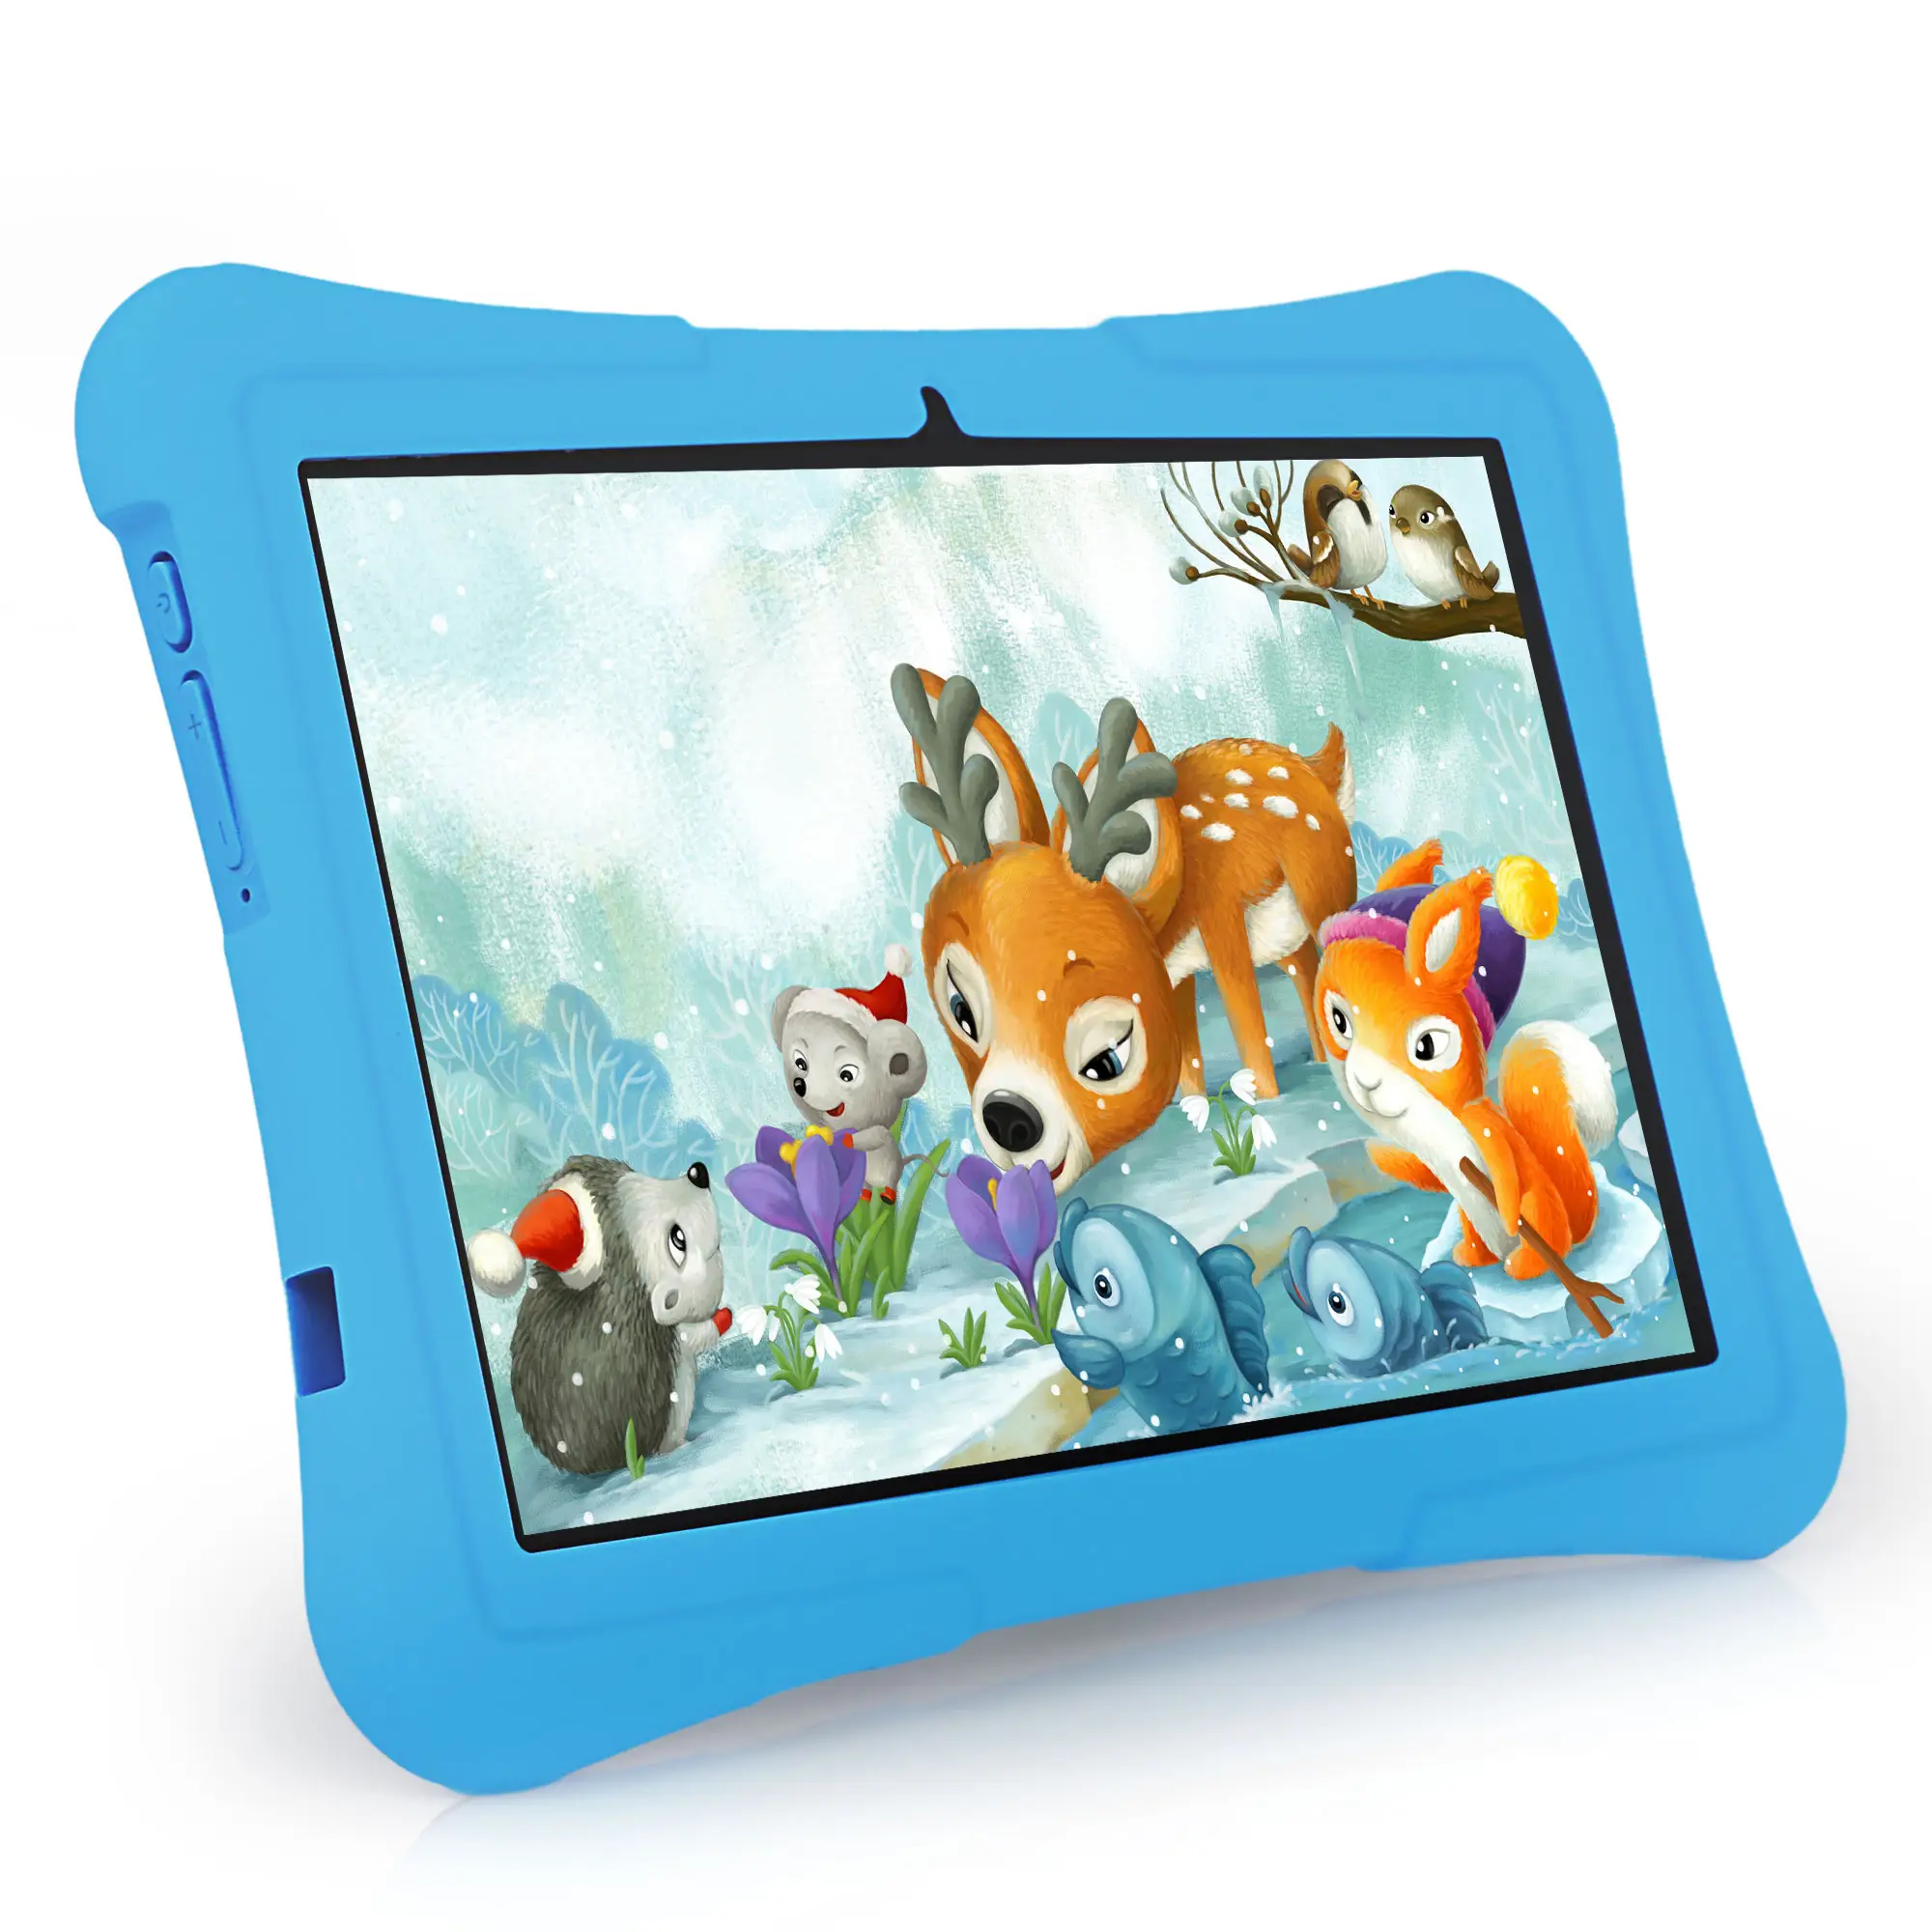 Tablet de 10 pulgadas para niños, Android, 32GB, tableta para niños pequeños, aplicación para PC preinstalada y control de padres, tableta educativa para niños